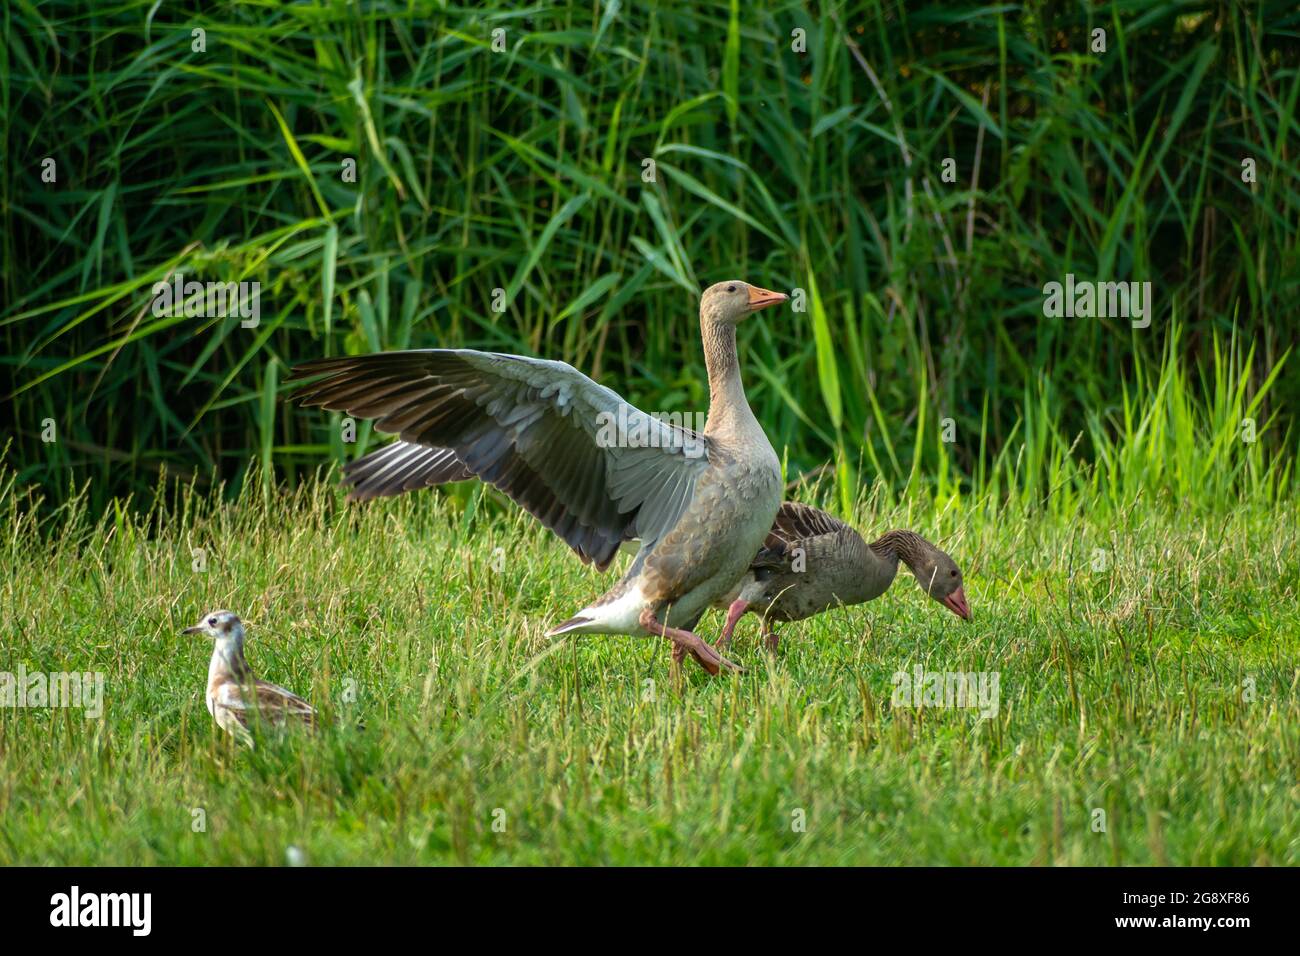 Greylag goose on the green grass, Stankow, Poland Stock Photo